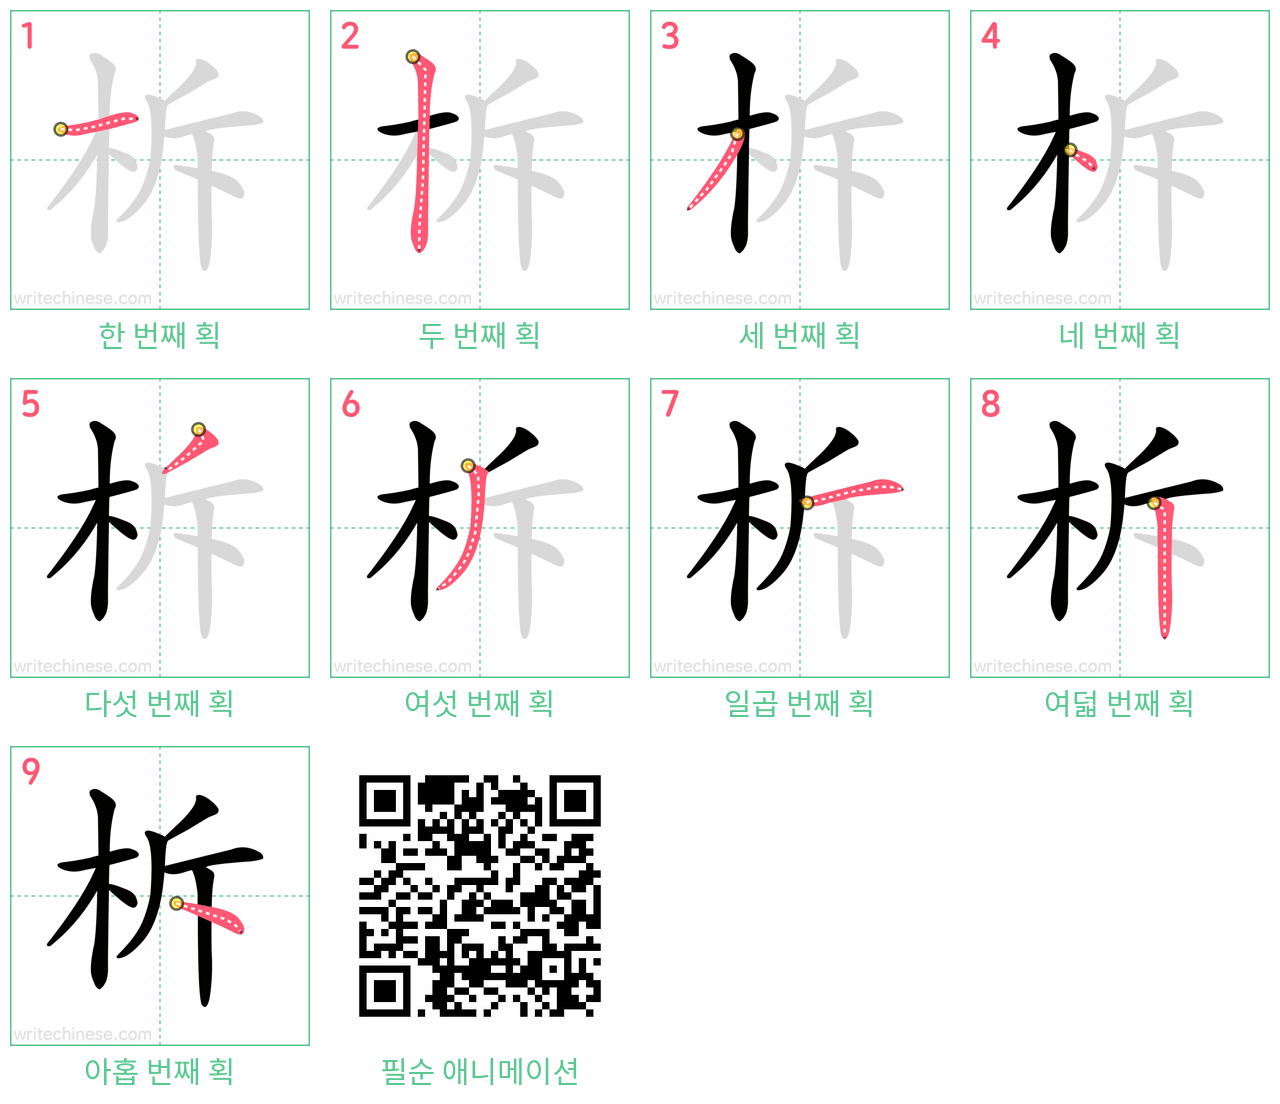 柝 step-by-step stroke order diagrams